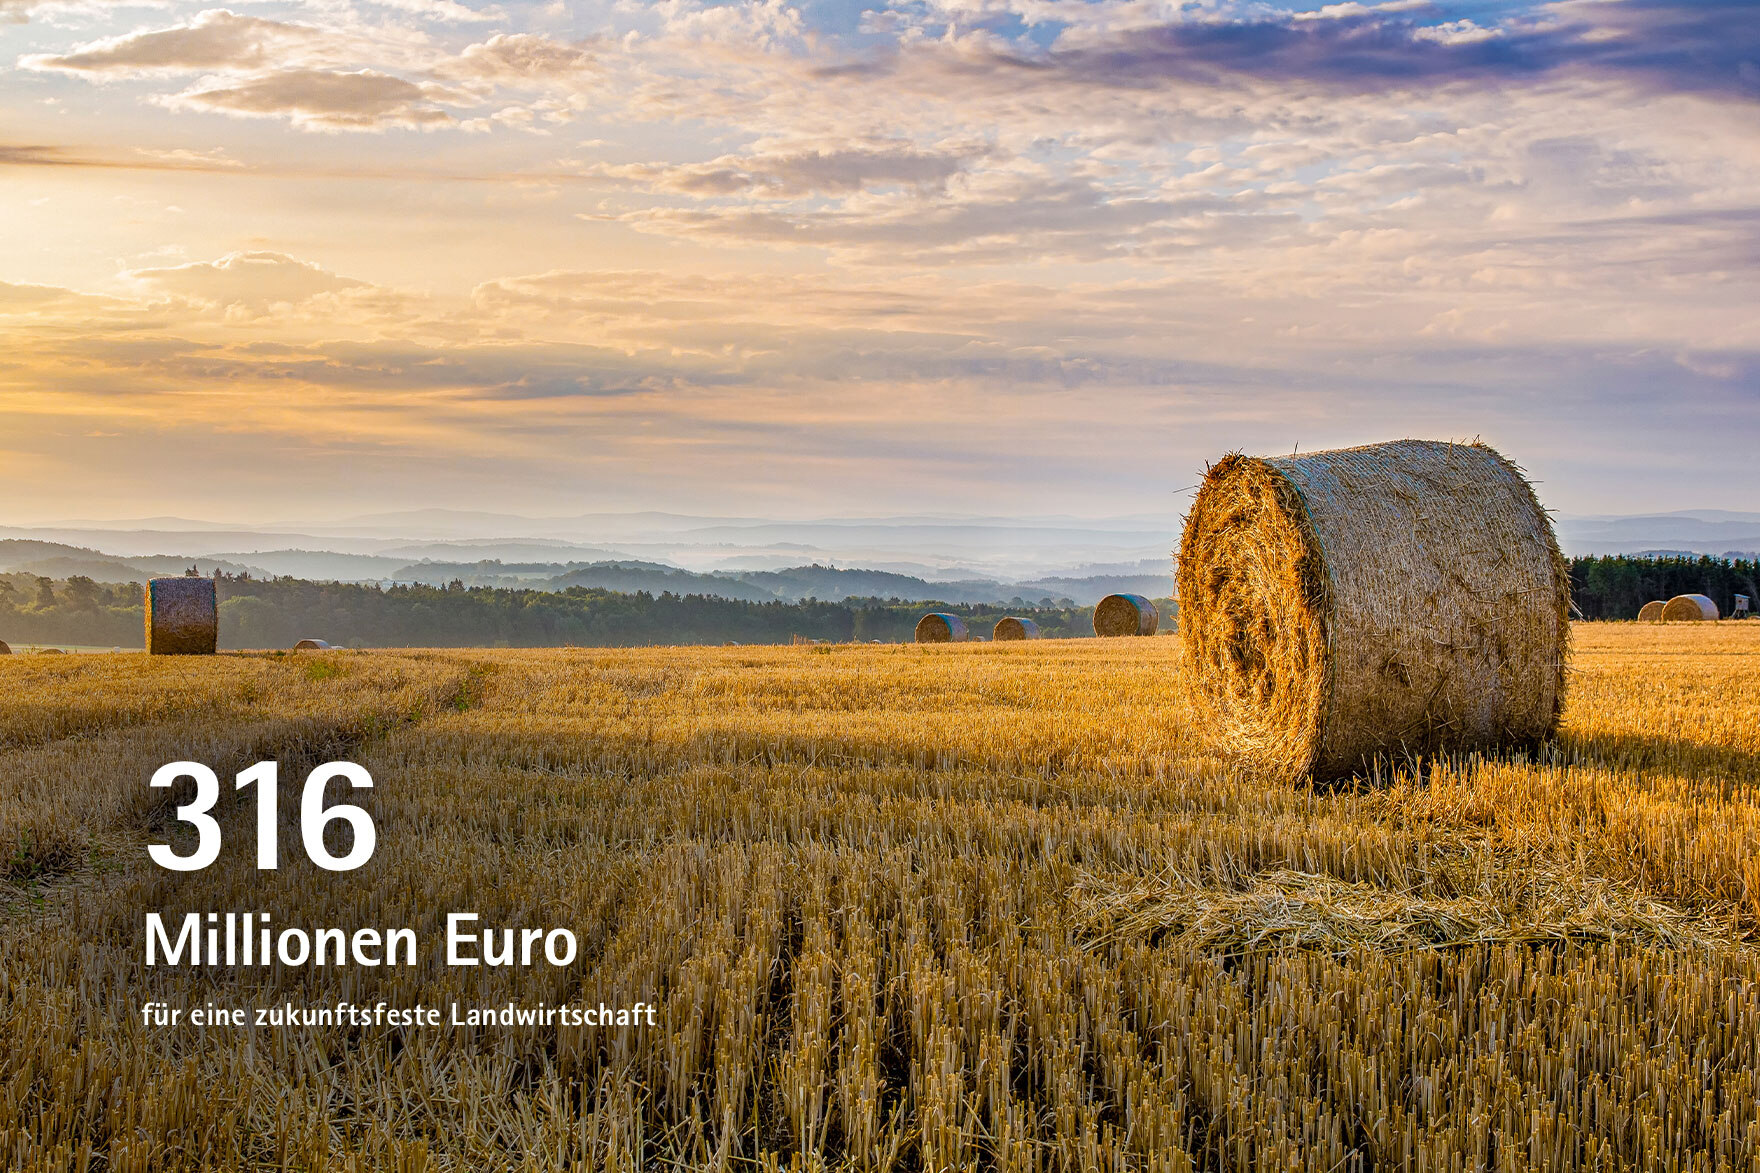 316 Mio. Euro für eine zukunftsfeste Landwirtschaft